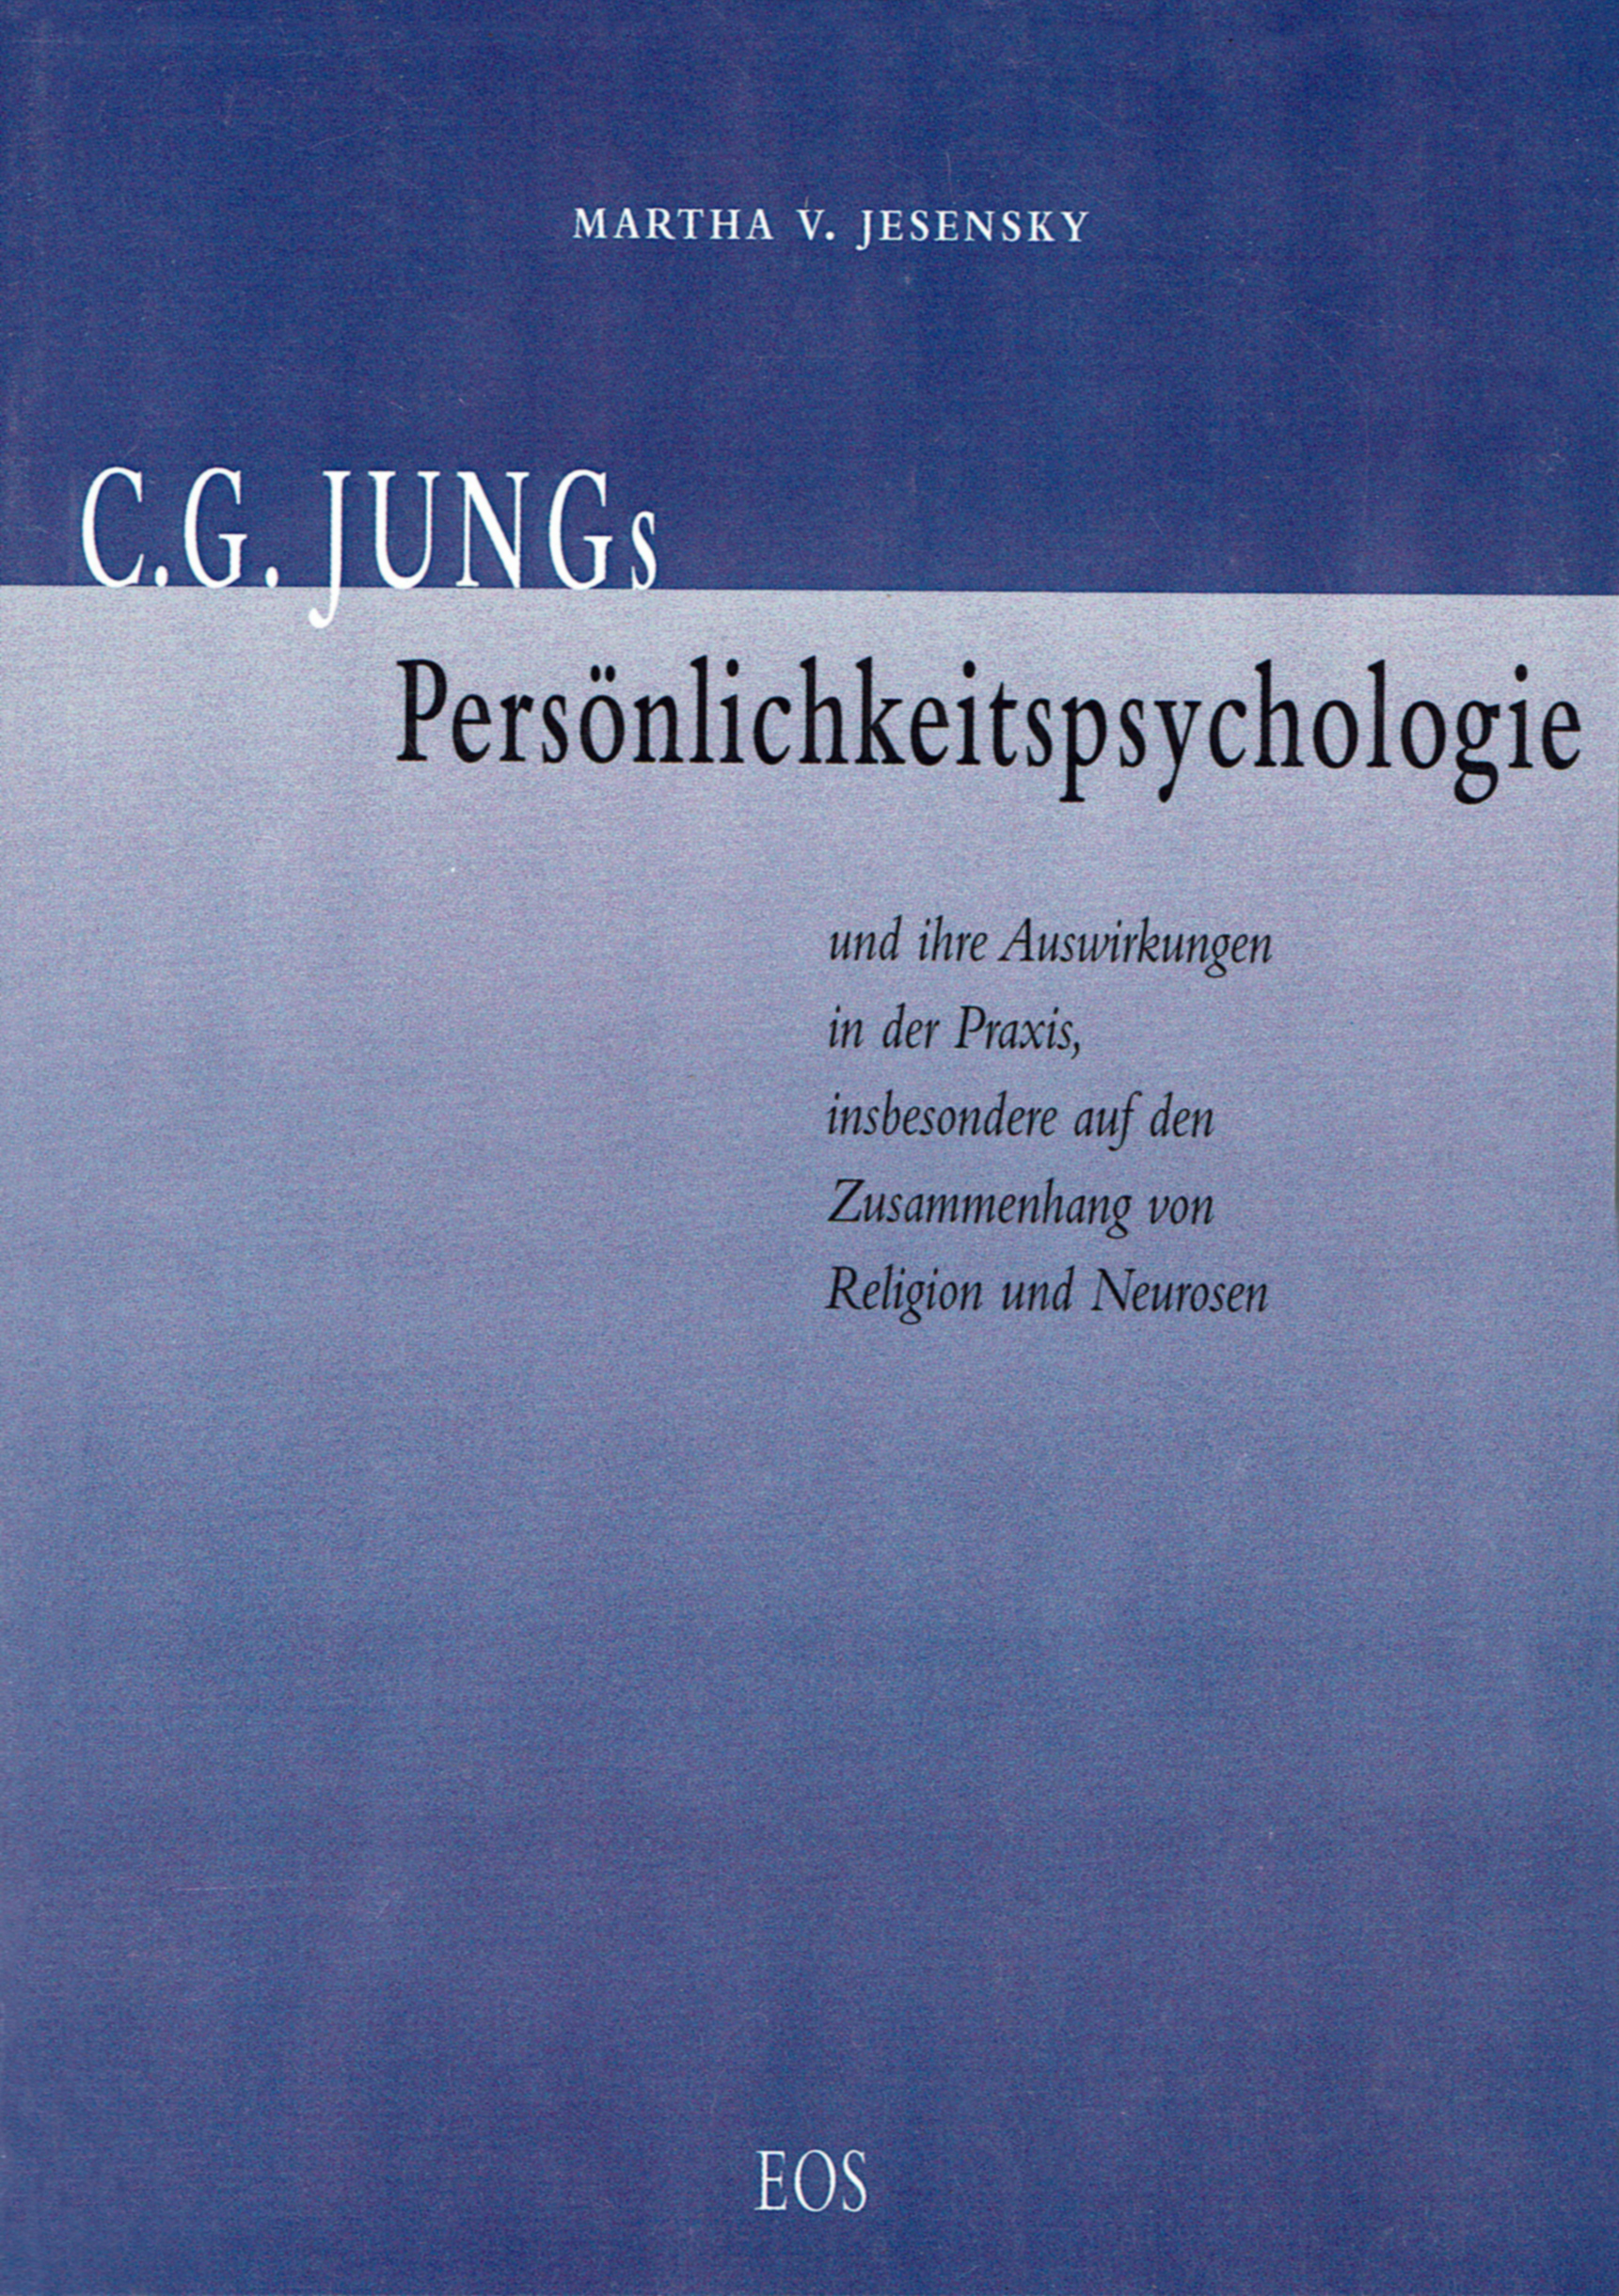 C. G. Jungs Persönlichkeitspsychologie und ihre Auswirkungen in der Praxis, insbesondere auf den Zusammenhang von Religion und Neurosen